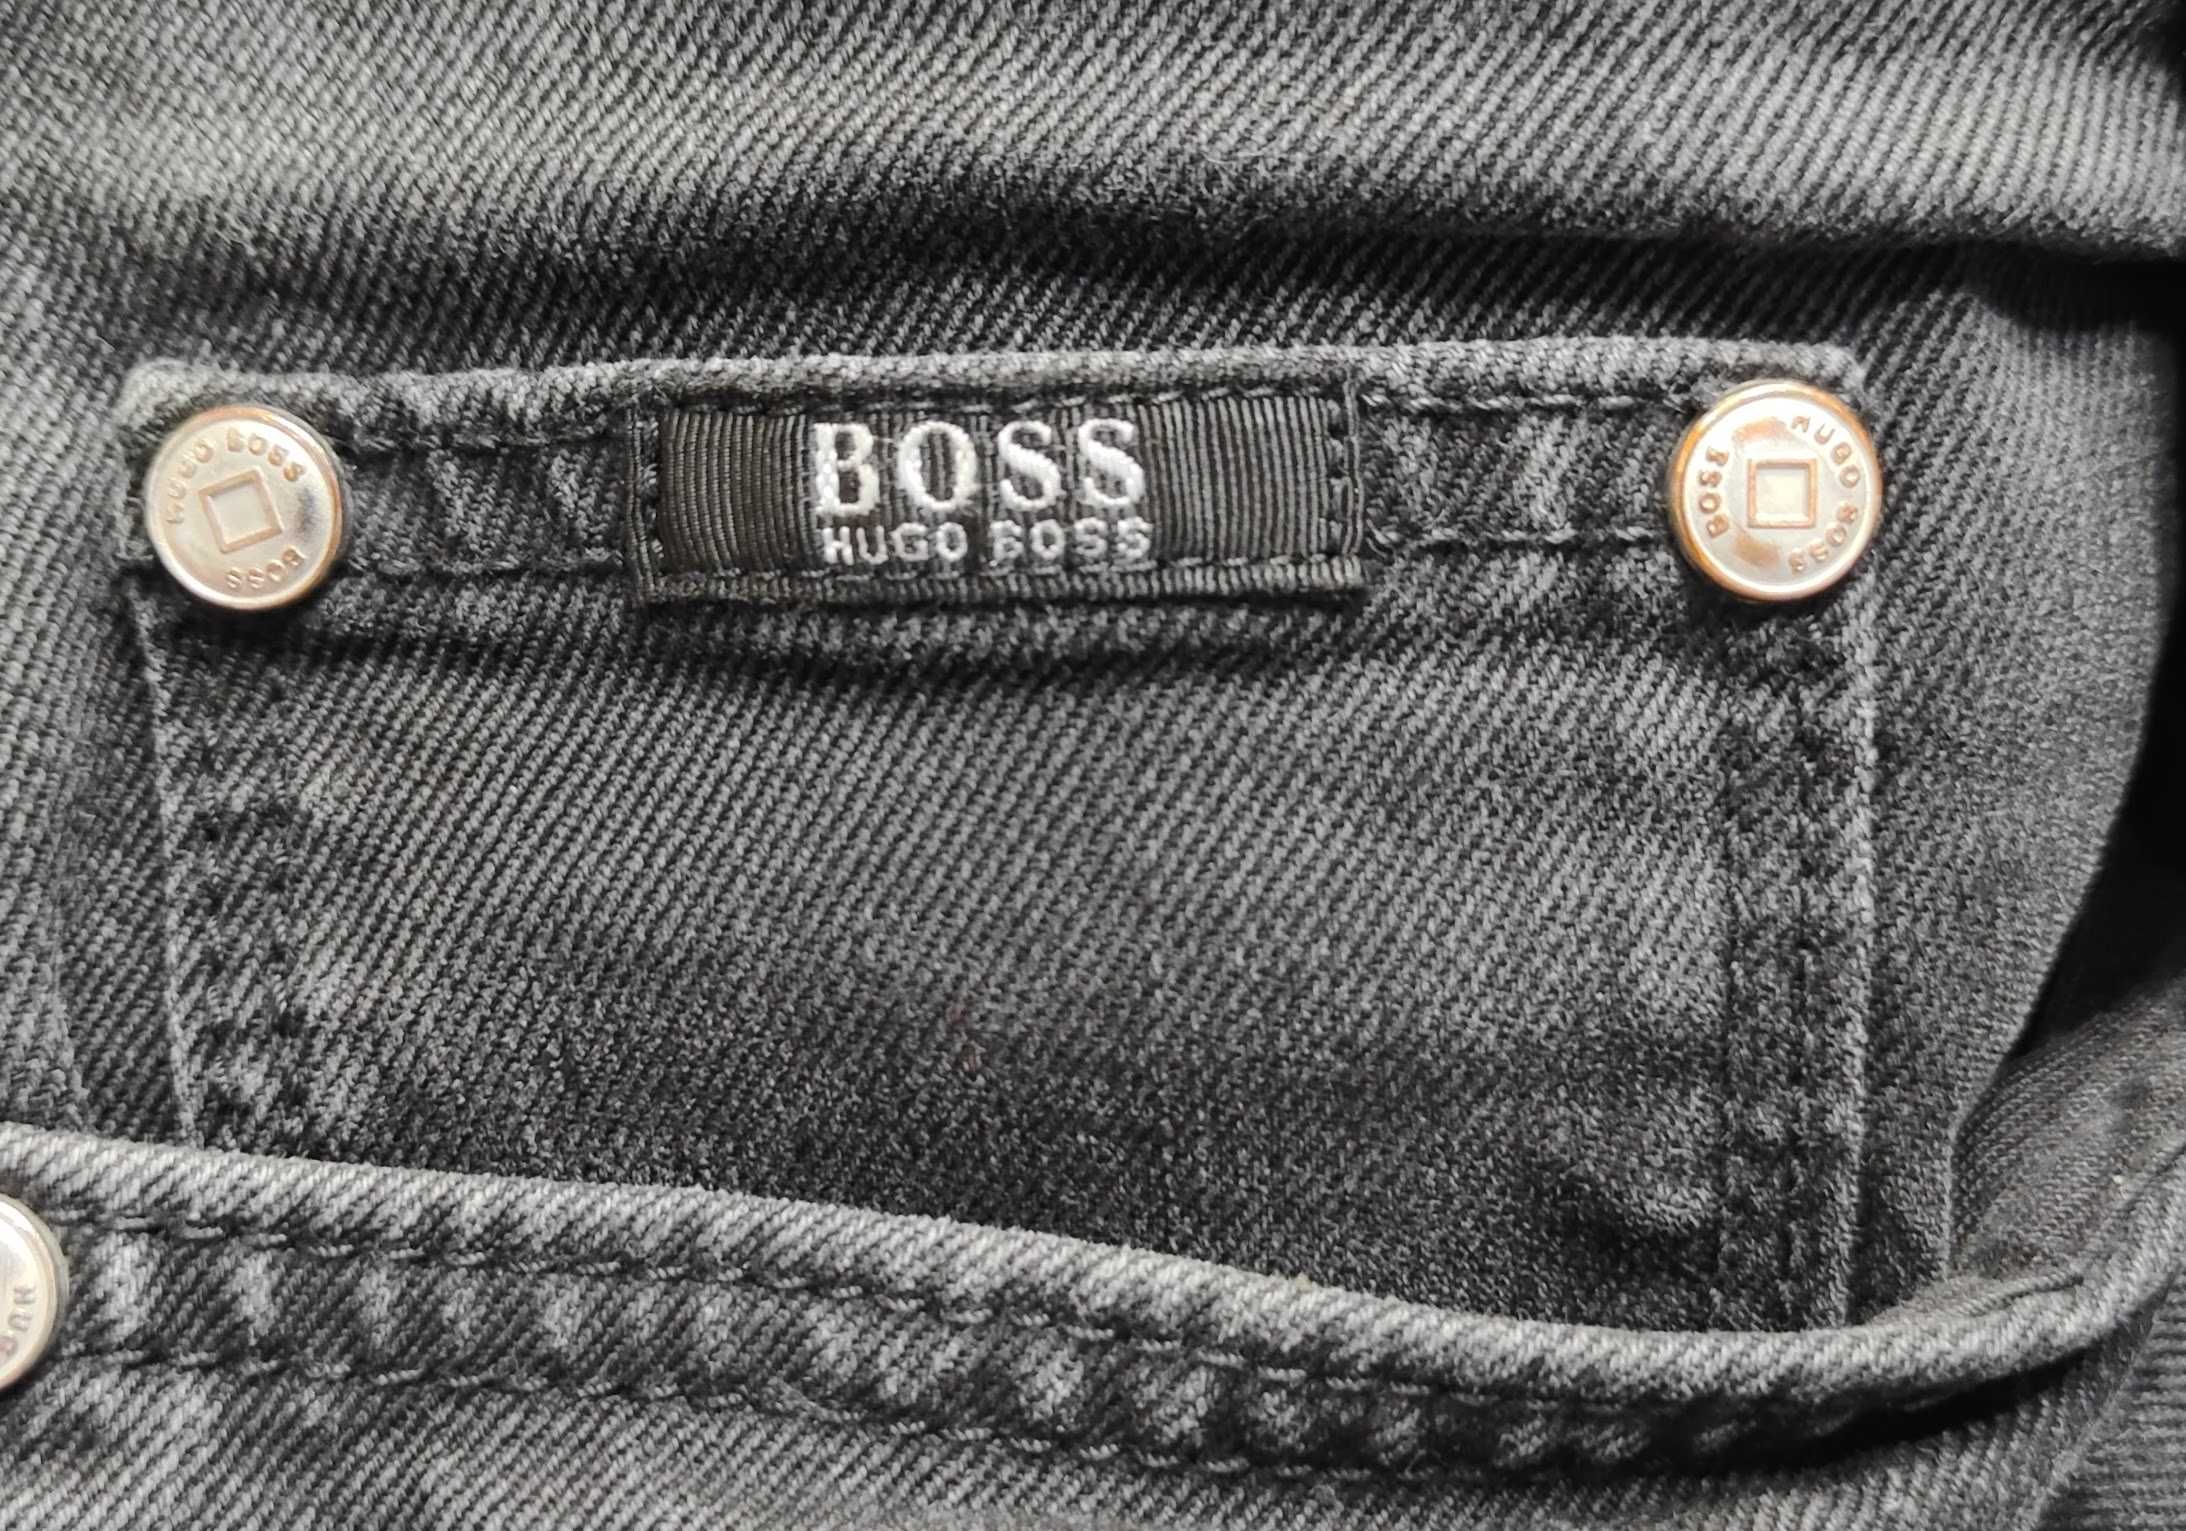 Wr) BOSS HUGO BOSS oryginalne męskie spodnie jeansowe Roz.36/34